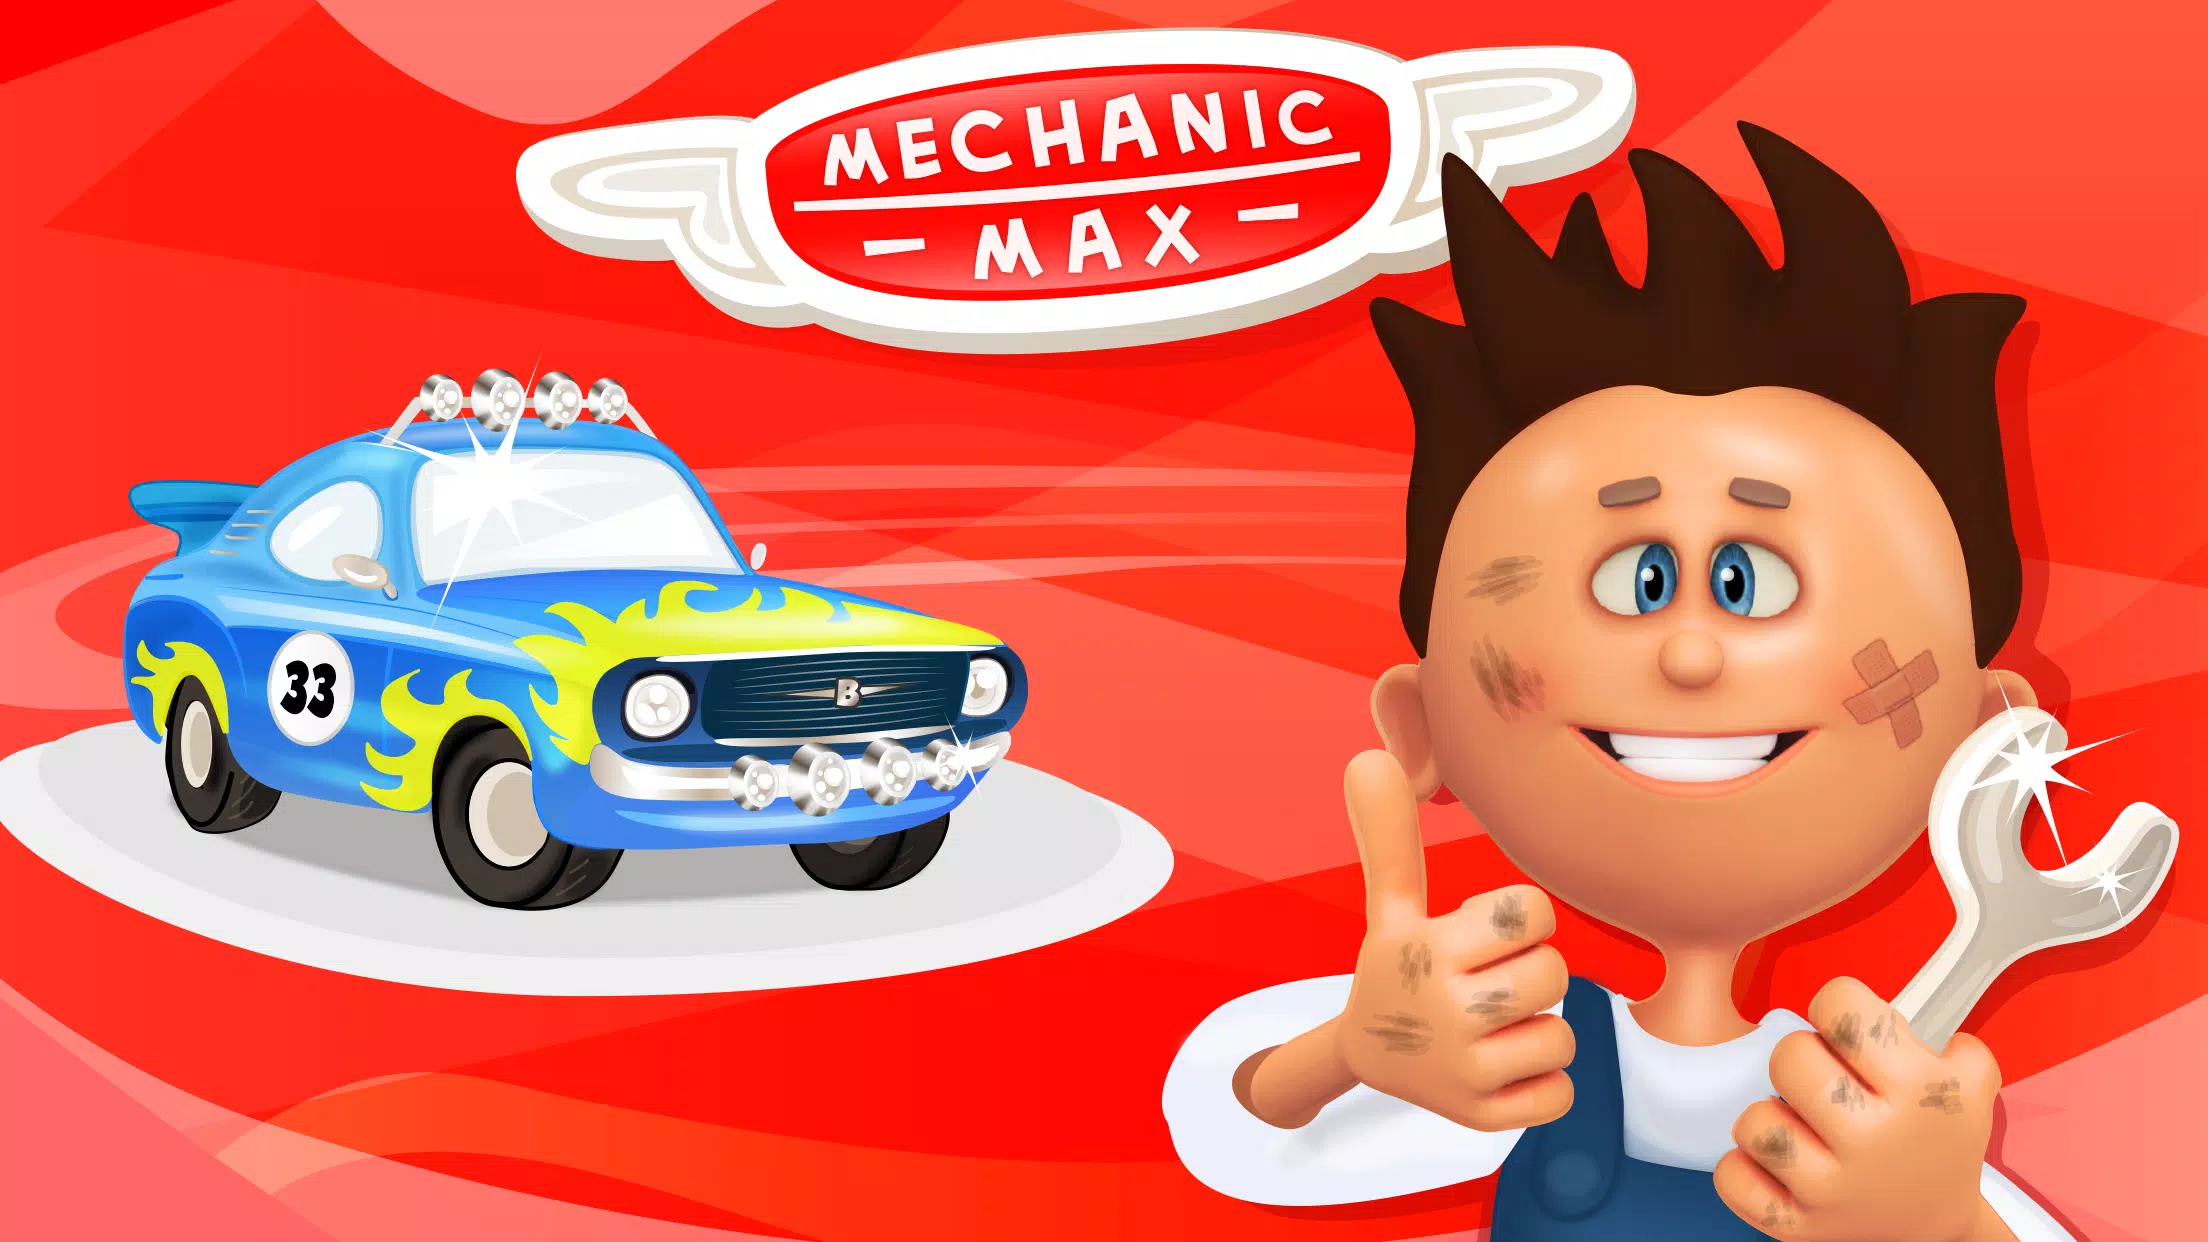 الميكانيكي ماكس - لعبة للأطفال APK للاندرويد تنزيل